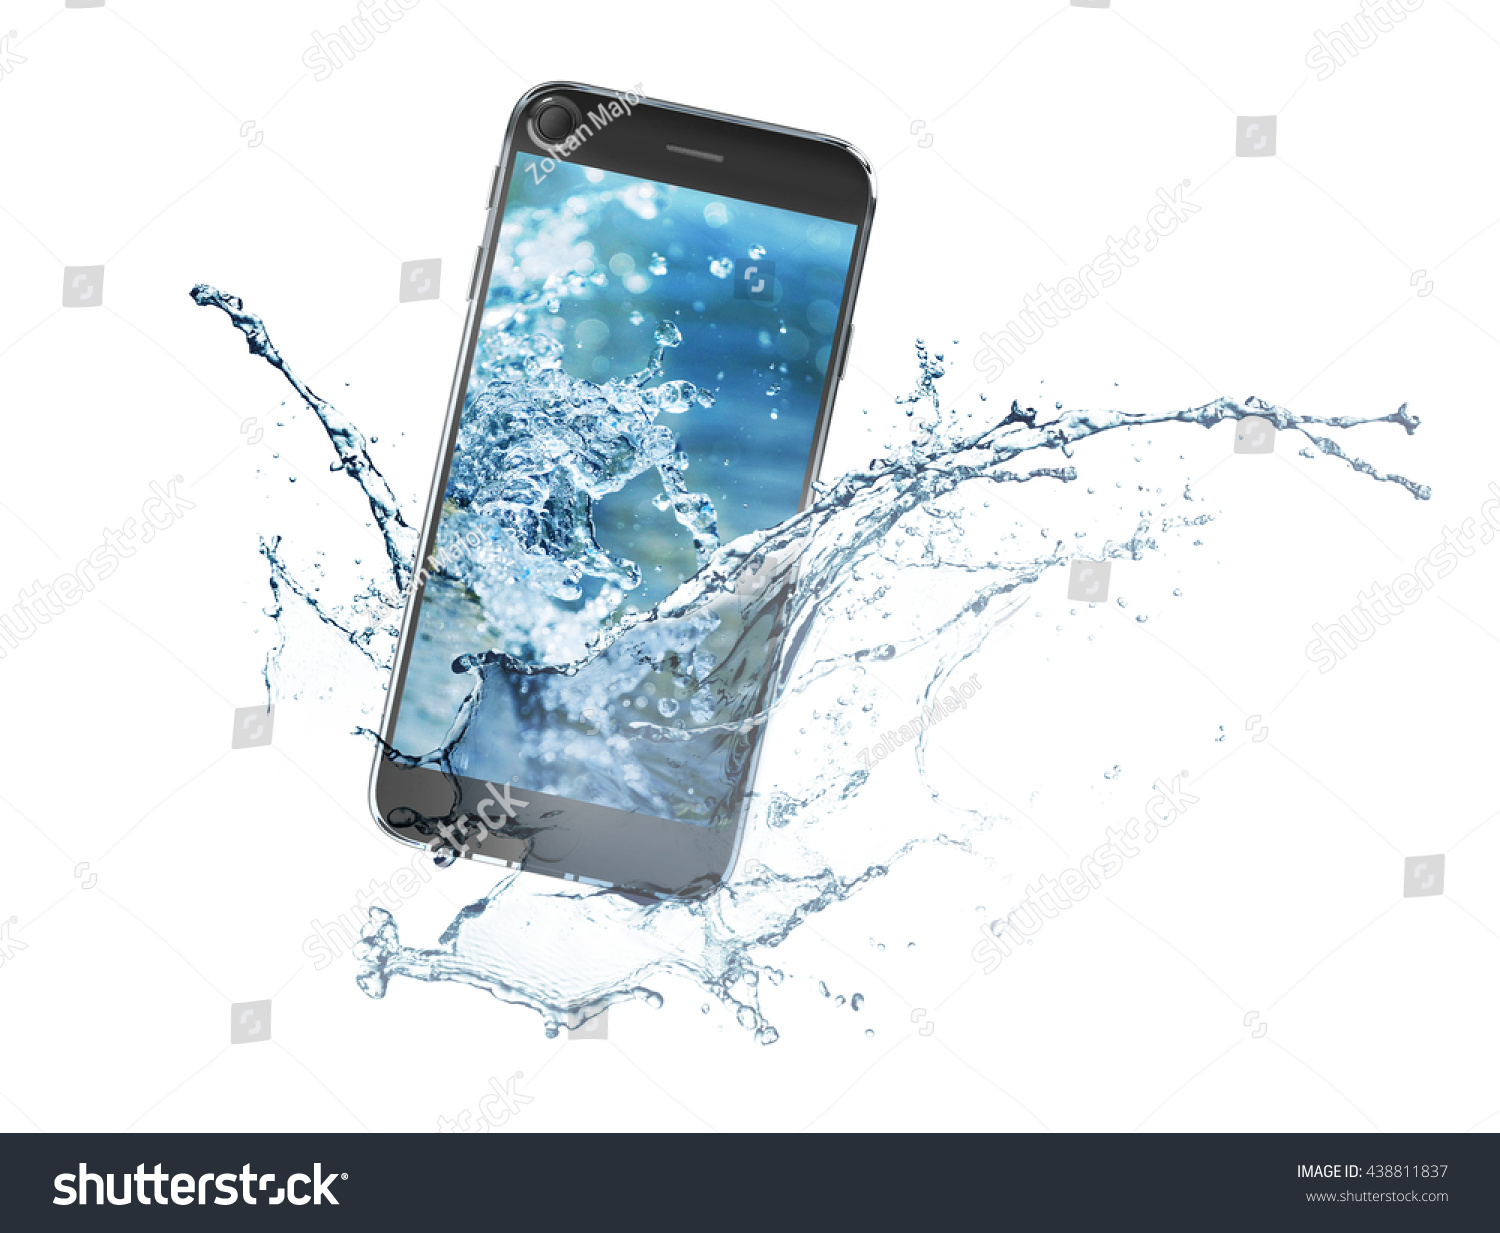 Залил телефон водой. Смартфон в воде. Смартфон падает в воду. Айфон в воде. Изображение смартфона.